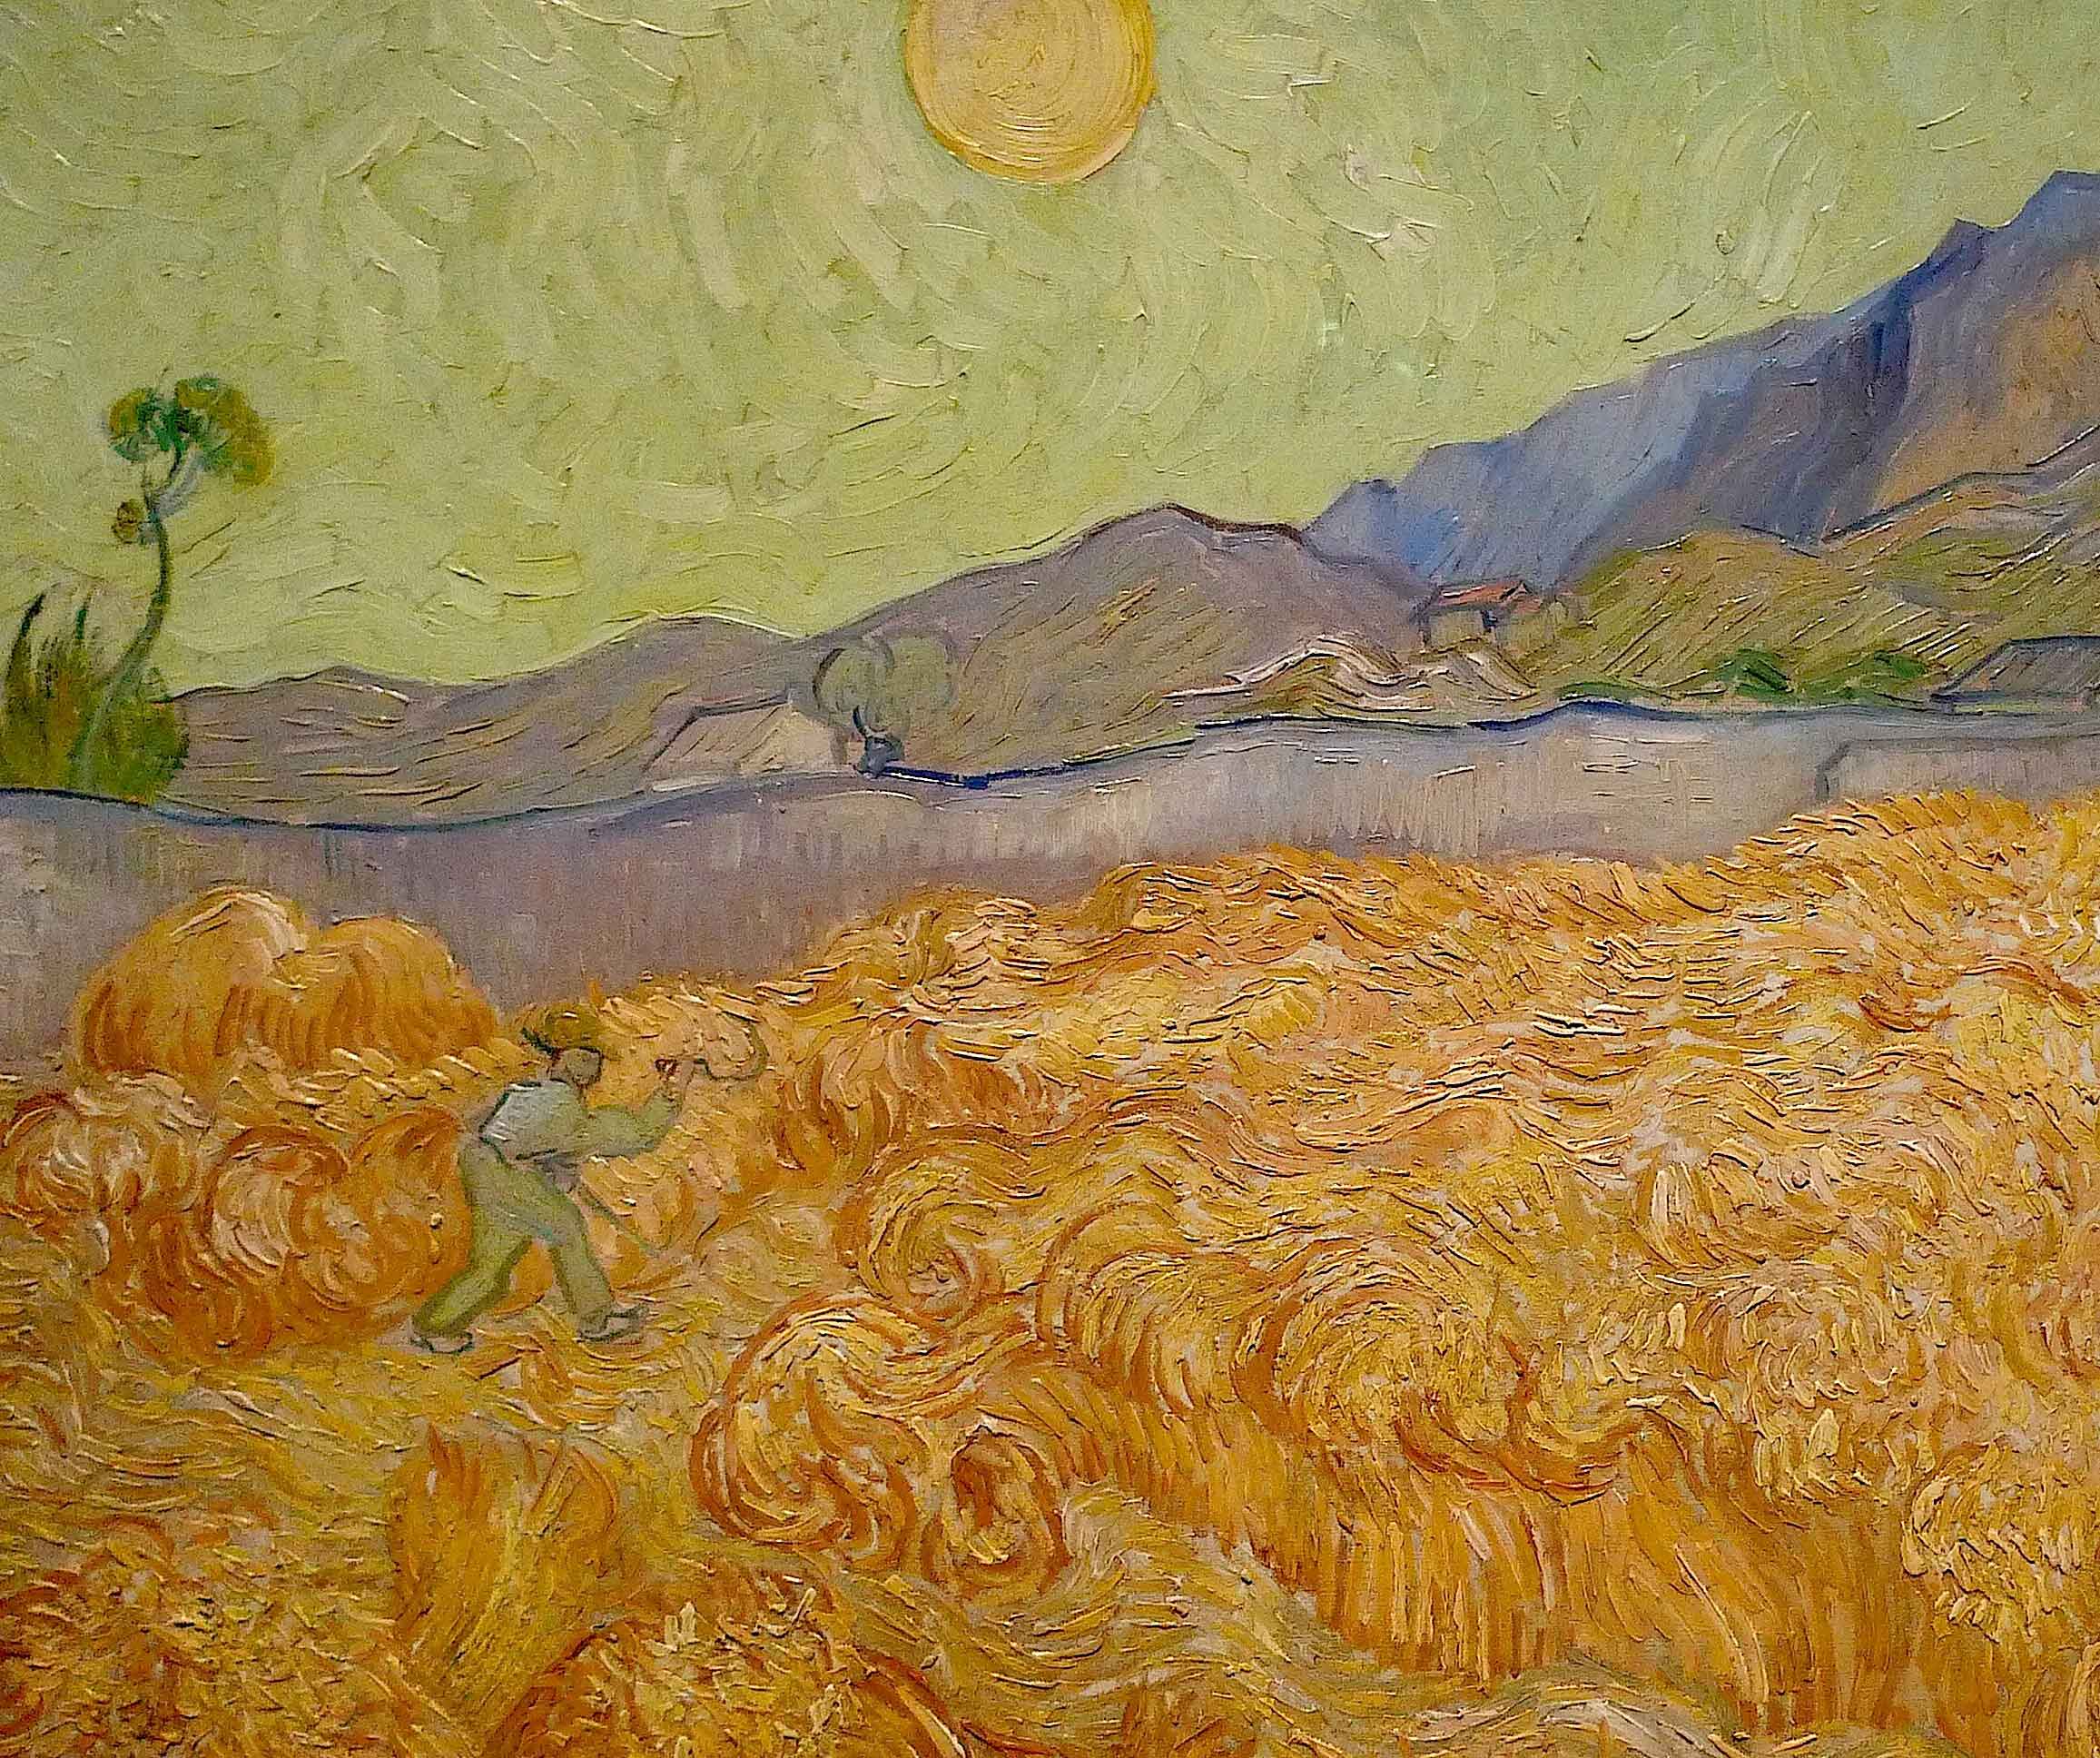 https://glasstire.com/wp-content/uploads/2022/01/31.Reap_.det-Vincent-Van-Gogh-Painting-.jpg?x88956